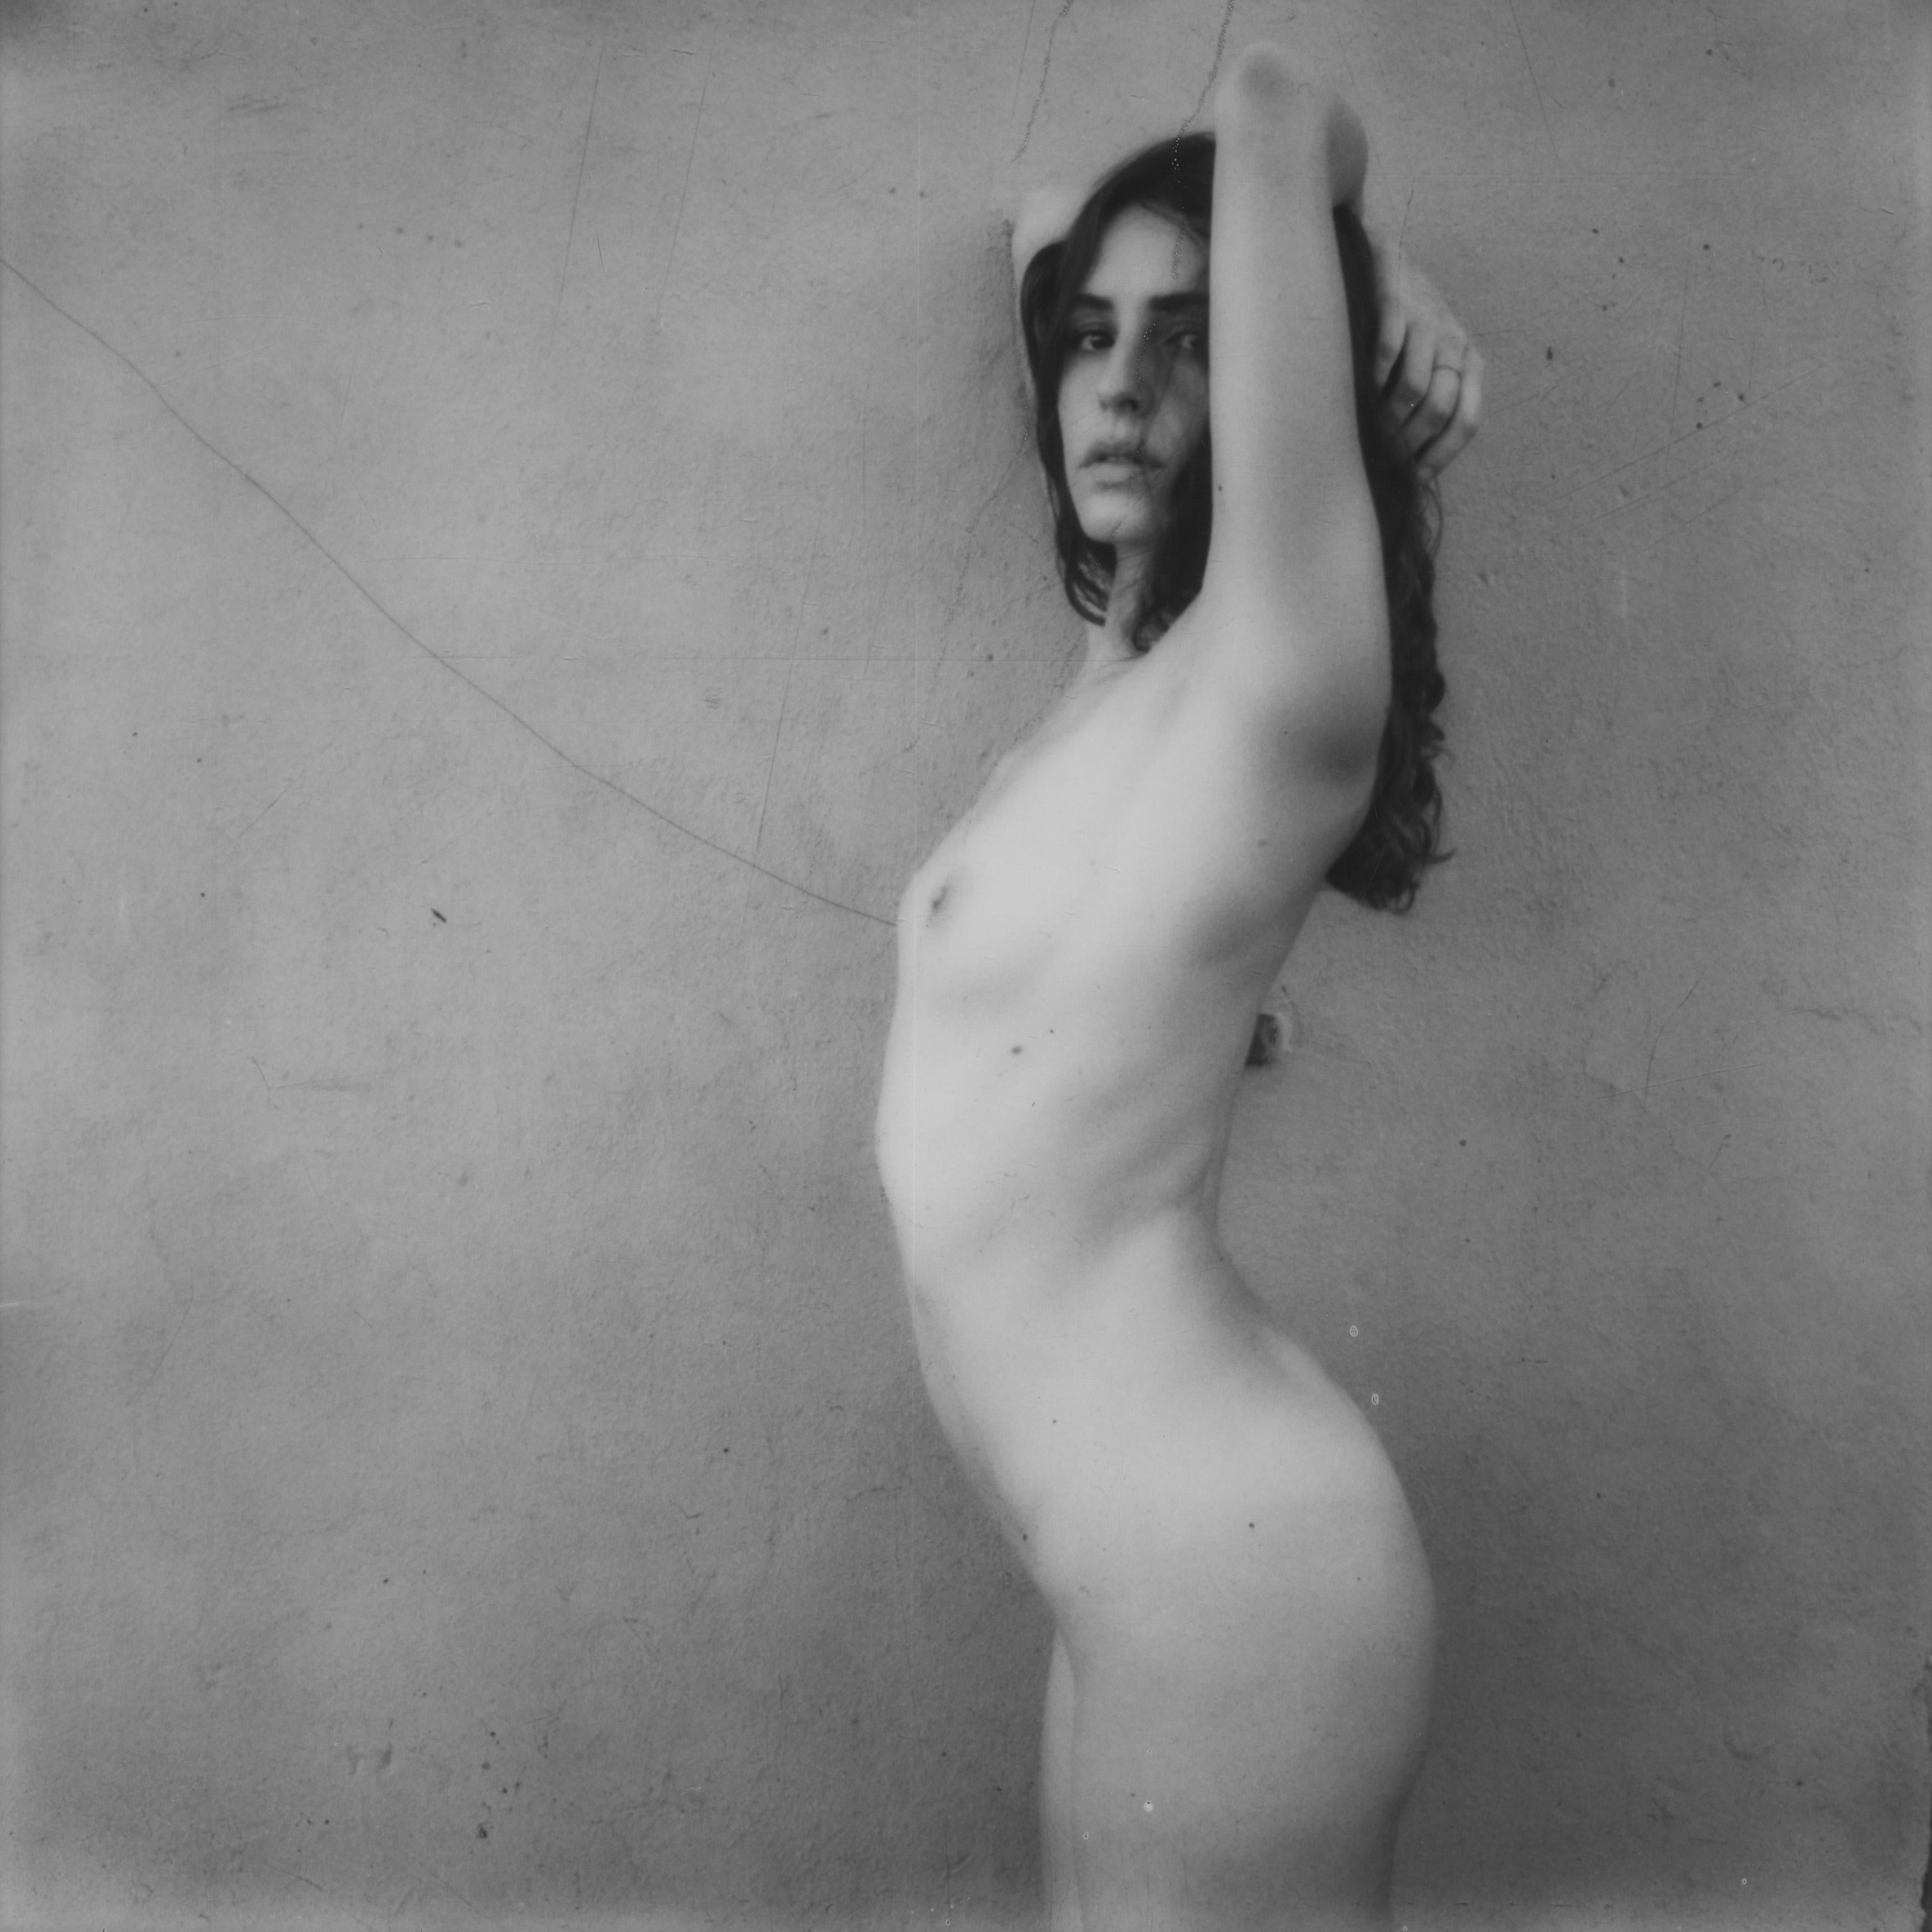 Kirsten Thys van den Audenaerde Nude Photograph - Turn - Contemporary, Women, Polaroid, 21st Century, Nude